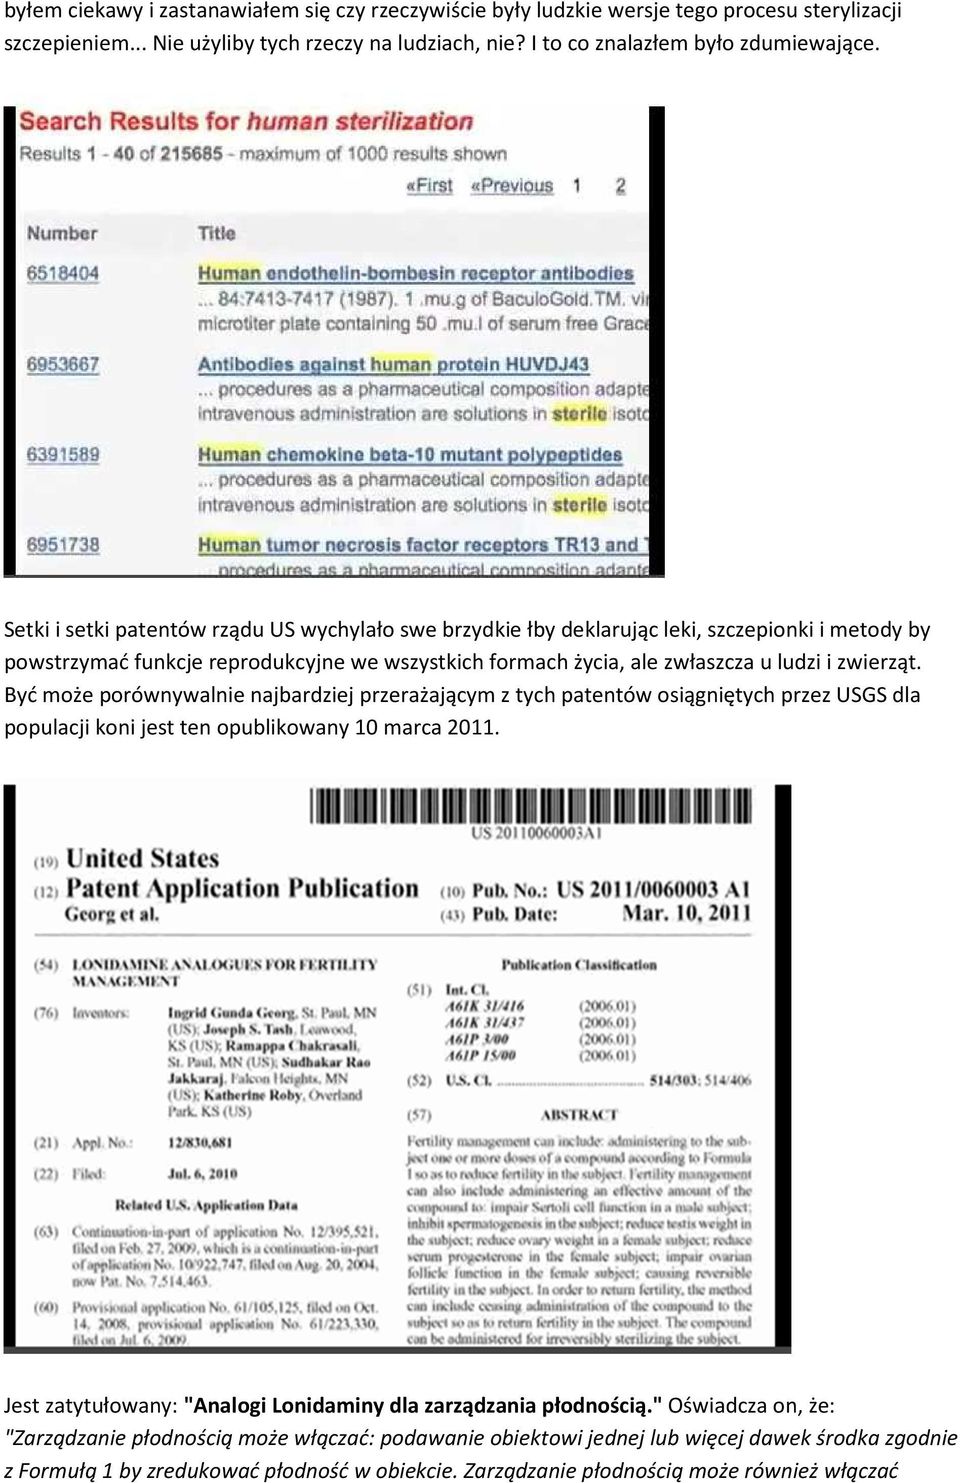 Być może porównywalnie najbardziej przerażającym z tych patentów osiągniętych przez USGS dla populacji koni jest ten opublikowany 10 marca 2011.